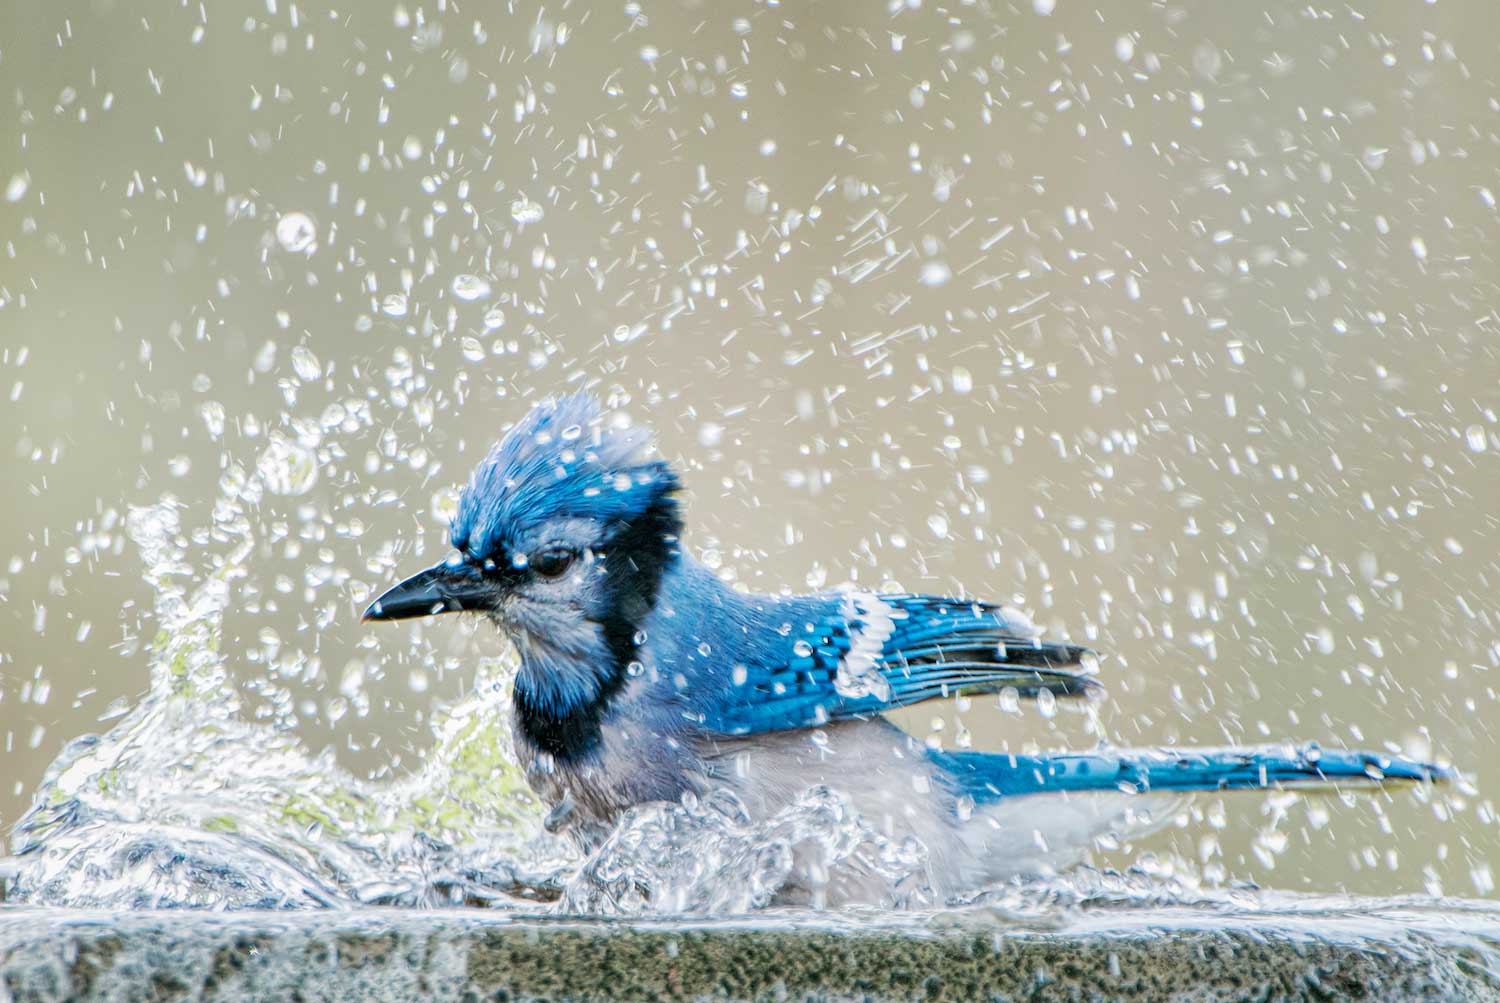 A blue jay splashing in a bird bath.